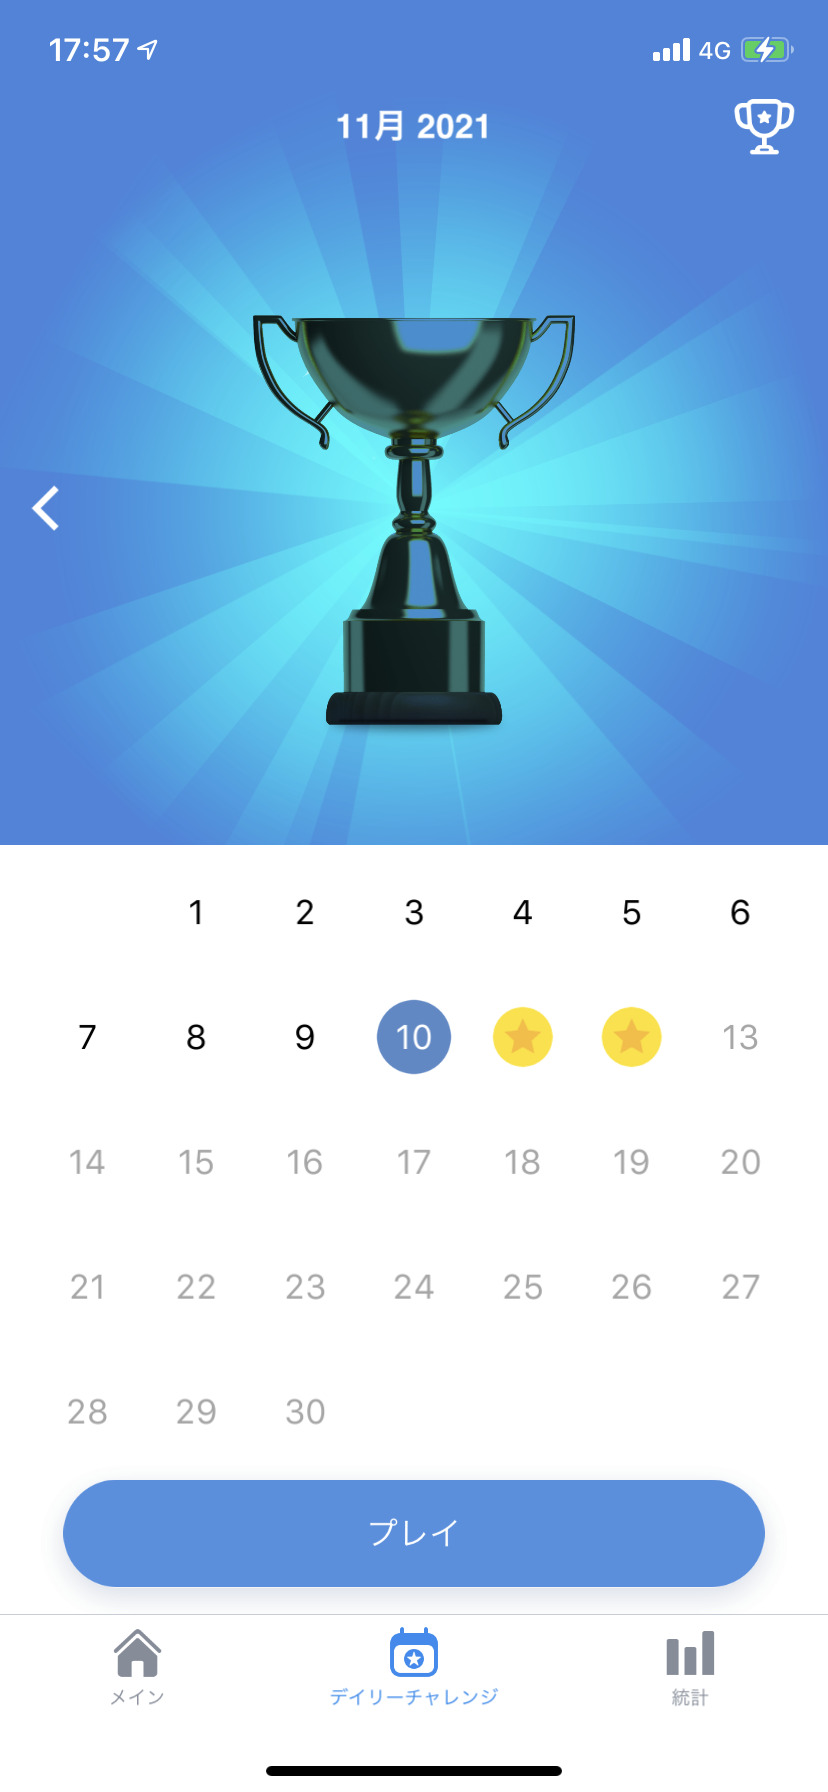 キラーナンプレ Sudoku.comのデイリーチャレンジの画像